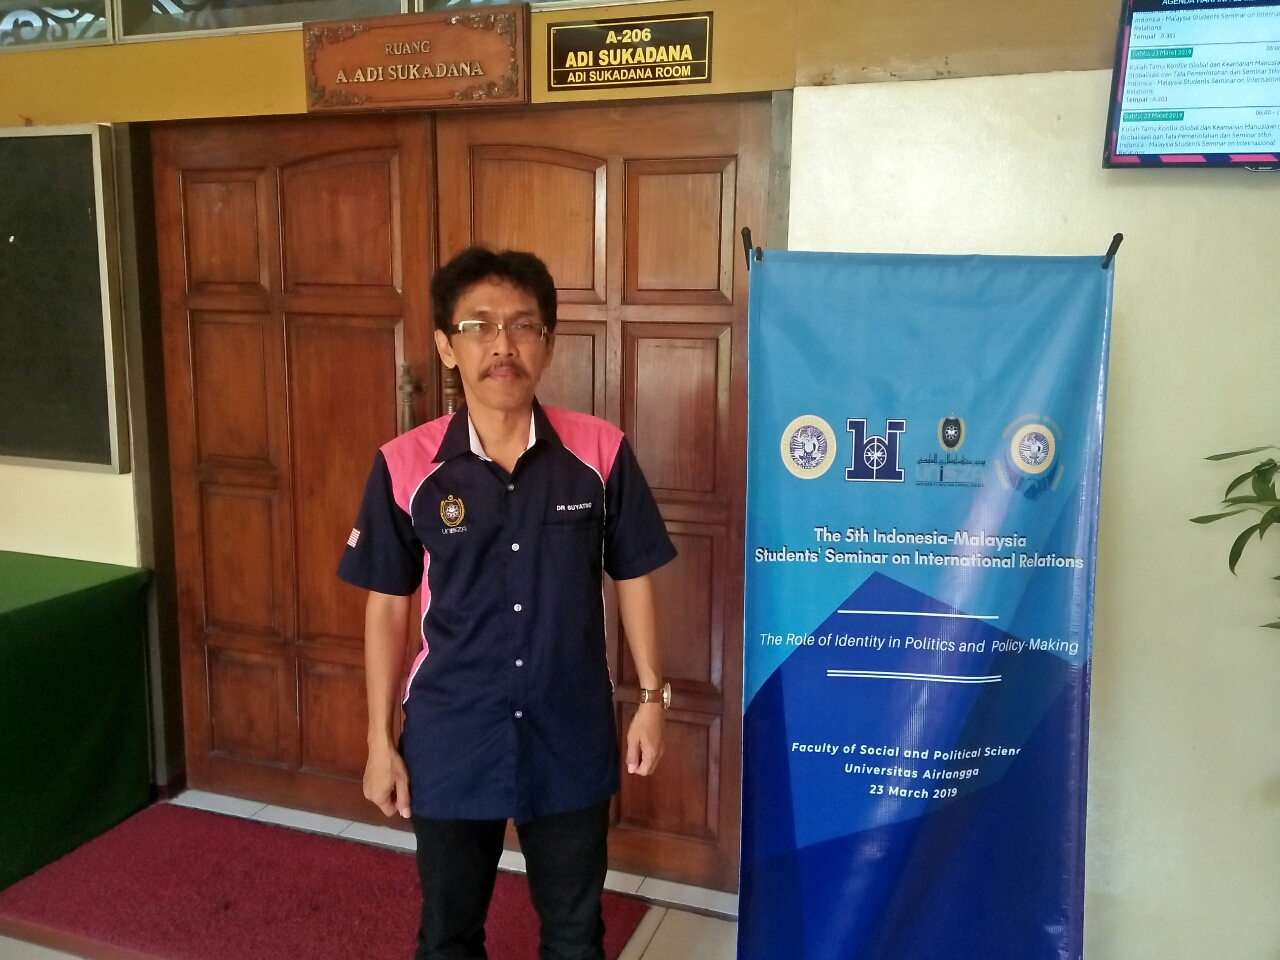 Gandeng Universiti Sultan Zainal Abidin Malaysia, Unair Gelar Seminar Internasional